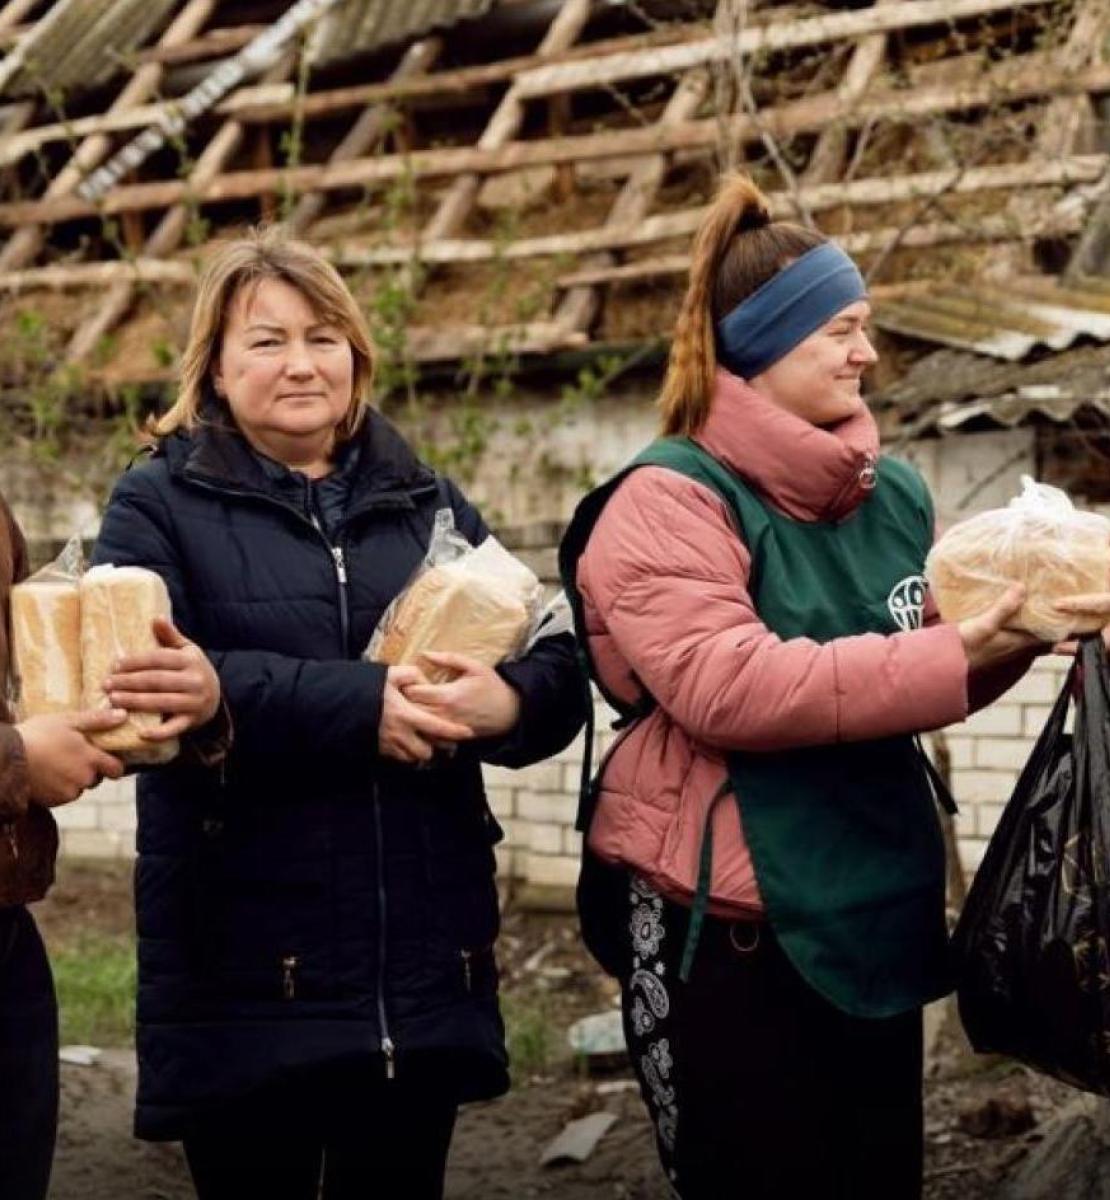 волонтер раздает женщинам буханки хлеба.